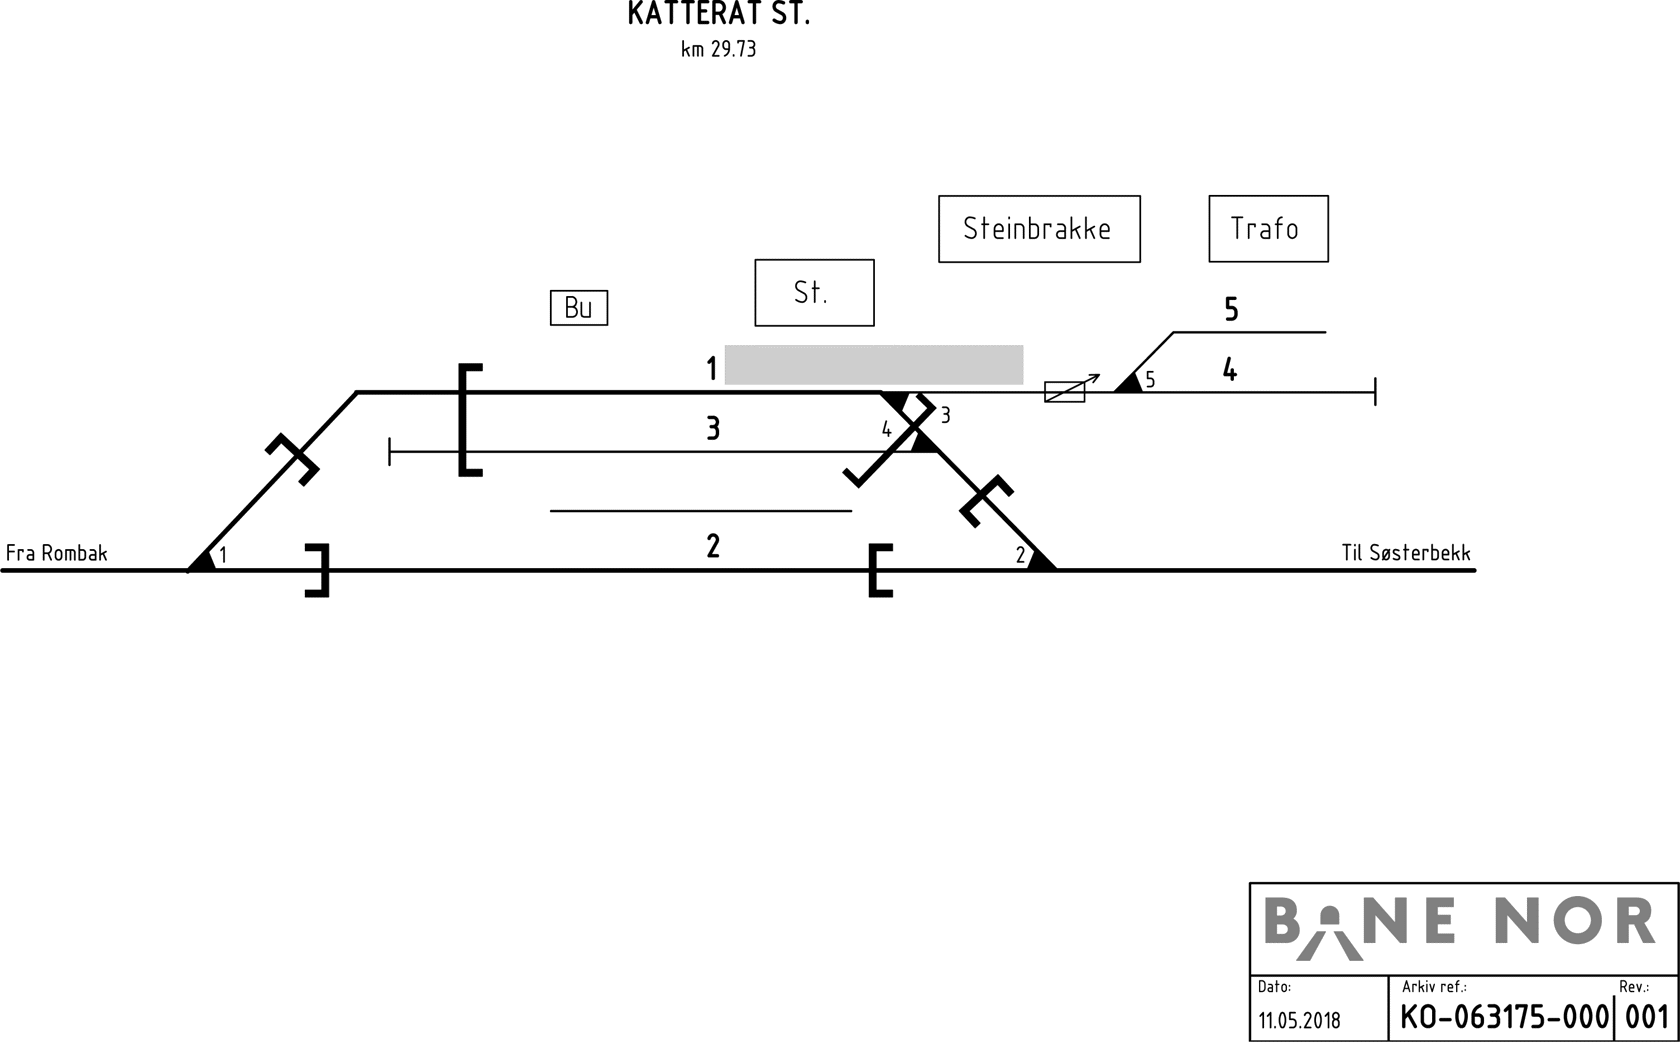 Sporplan Katterat stasjon